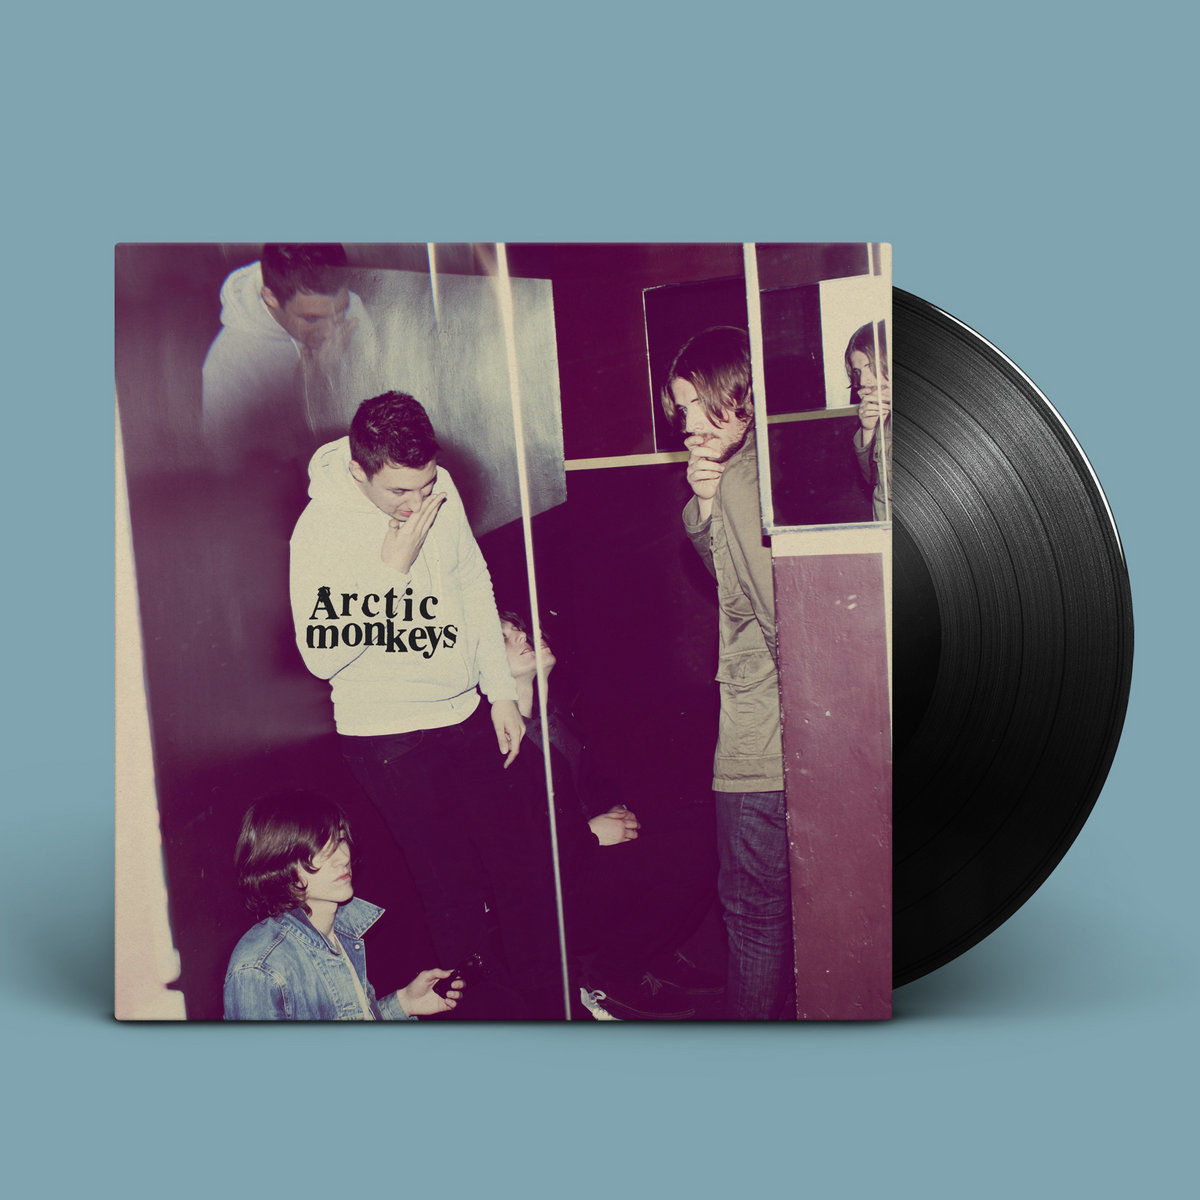 Arctic Monkeys - Humbug: Vinyl LP